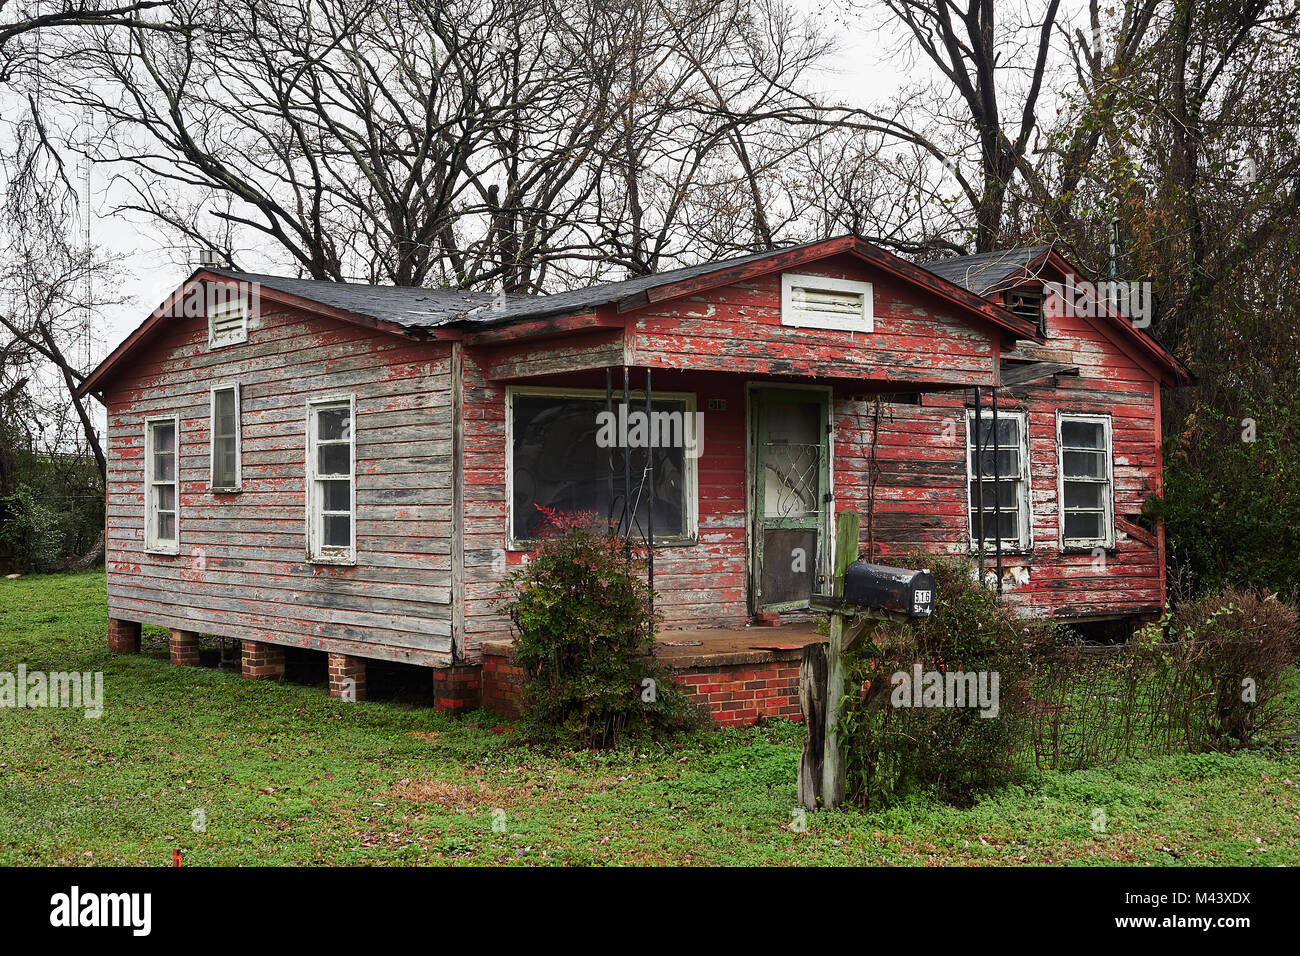 Vacante, vacío o casa abandonada o casa en una zona pobre que muestra el  nivel de la pobreza en el interior de la zona urbana de Montgomery,  Alabama, Estados Unidos Fotografía de